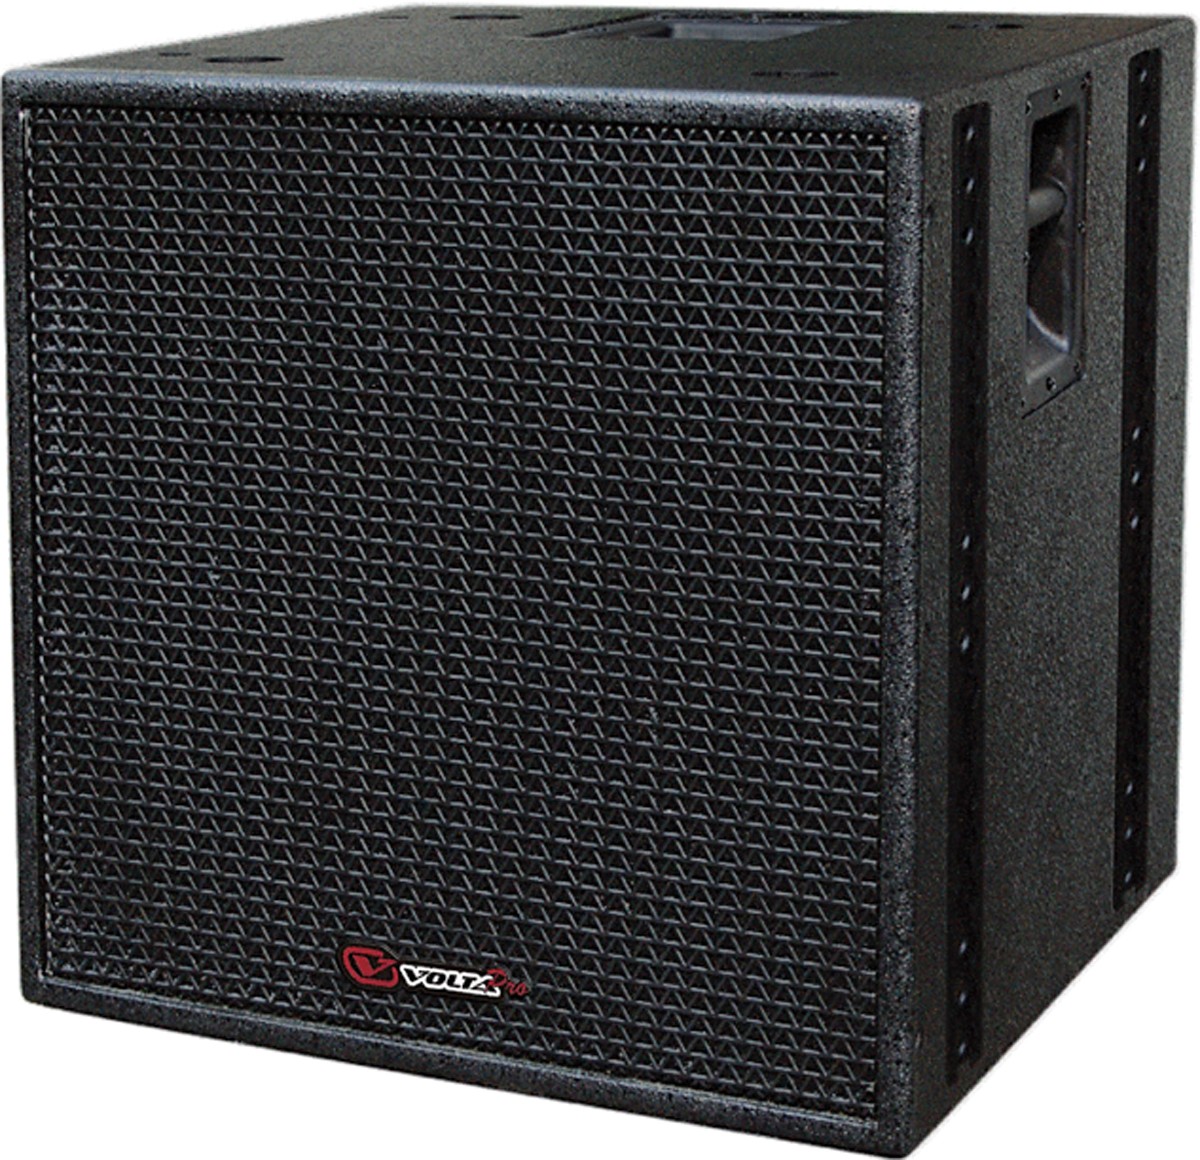 Volta T-REX Top акустическая широкополосная система, 600 Вт, цвет черный